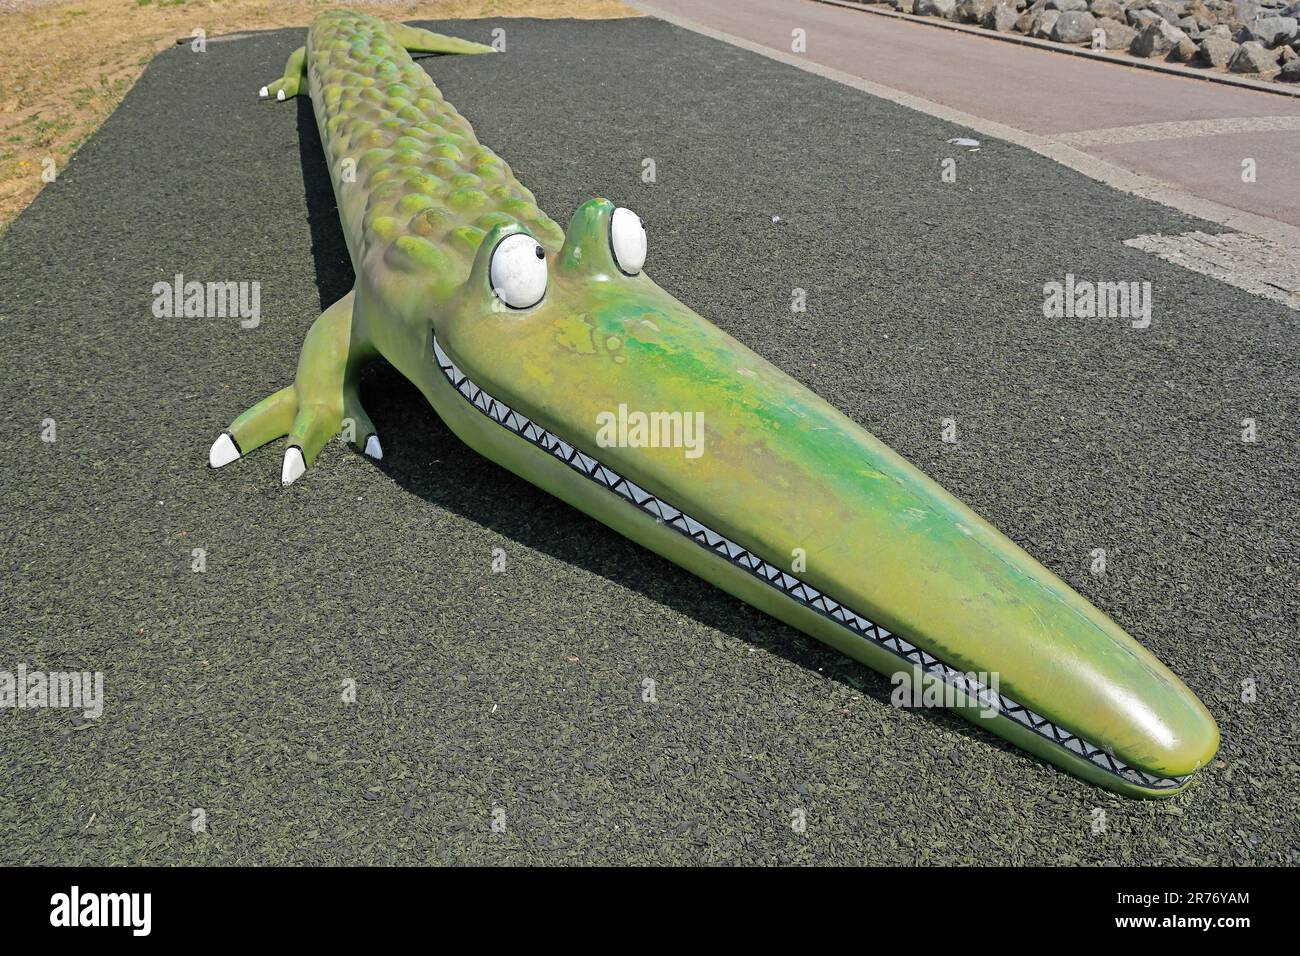 Crocky-Wock, das Krokodil - eine Figur von Roald Dahl aus dem Gedicht. Skulptur / Modell / lustige Kunstwerkbank am Cardiff Bay Barrage. Juni 2023. Sommer. Zyl. Stockfoto